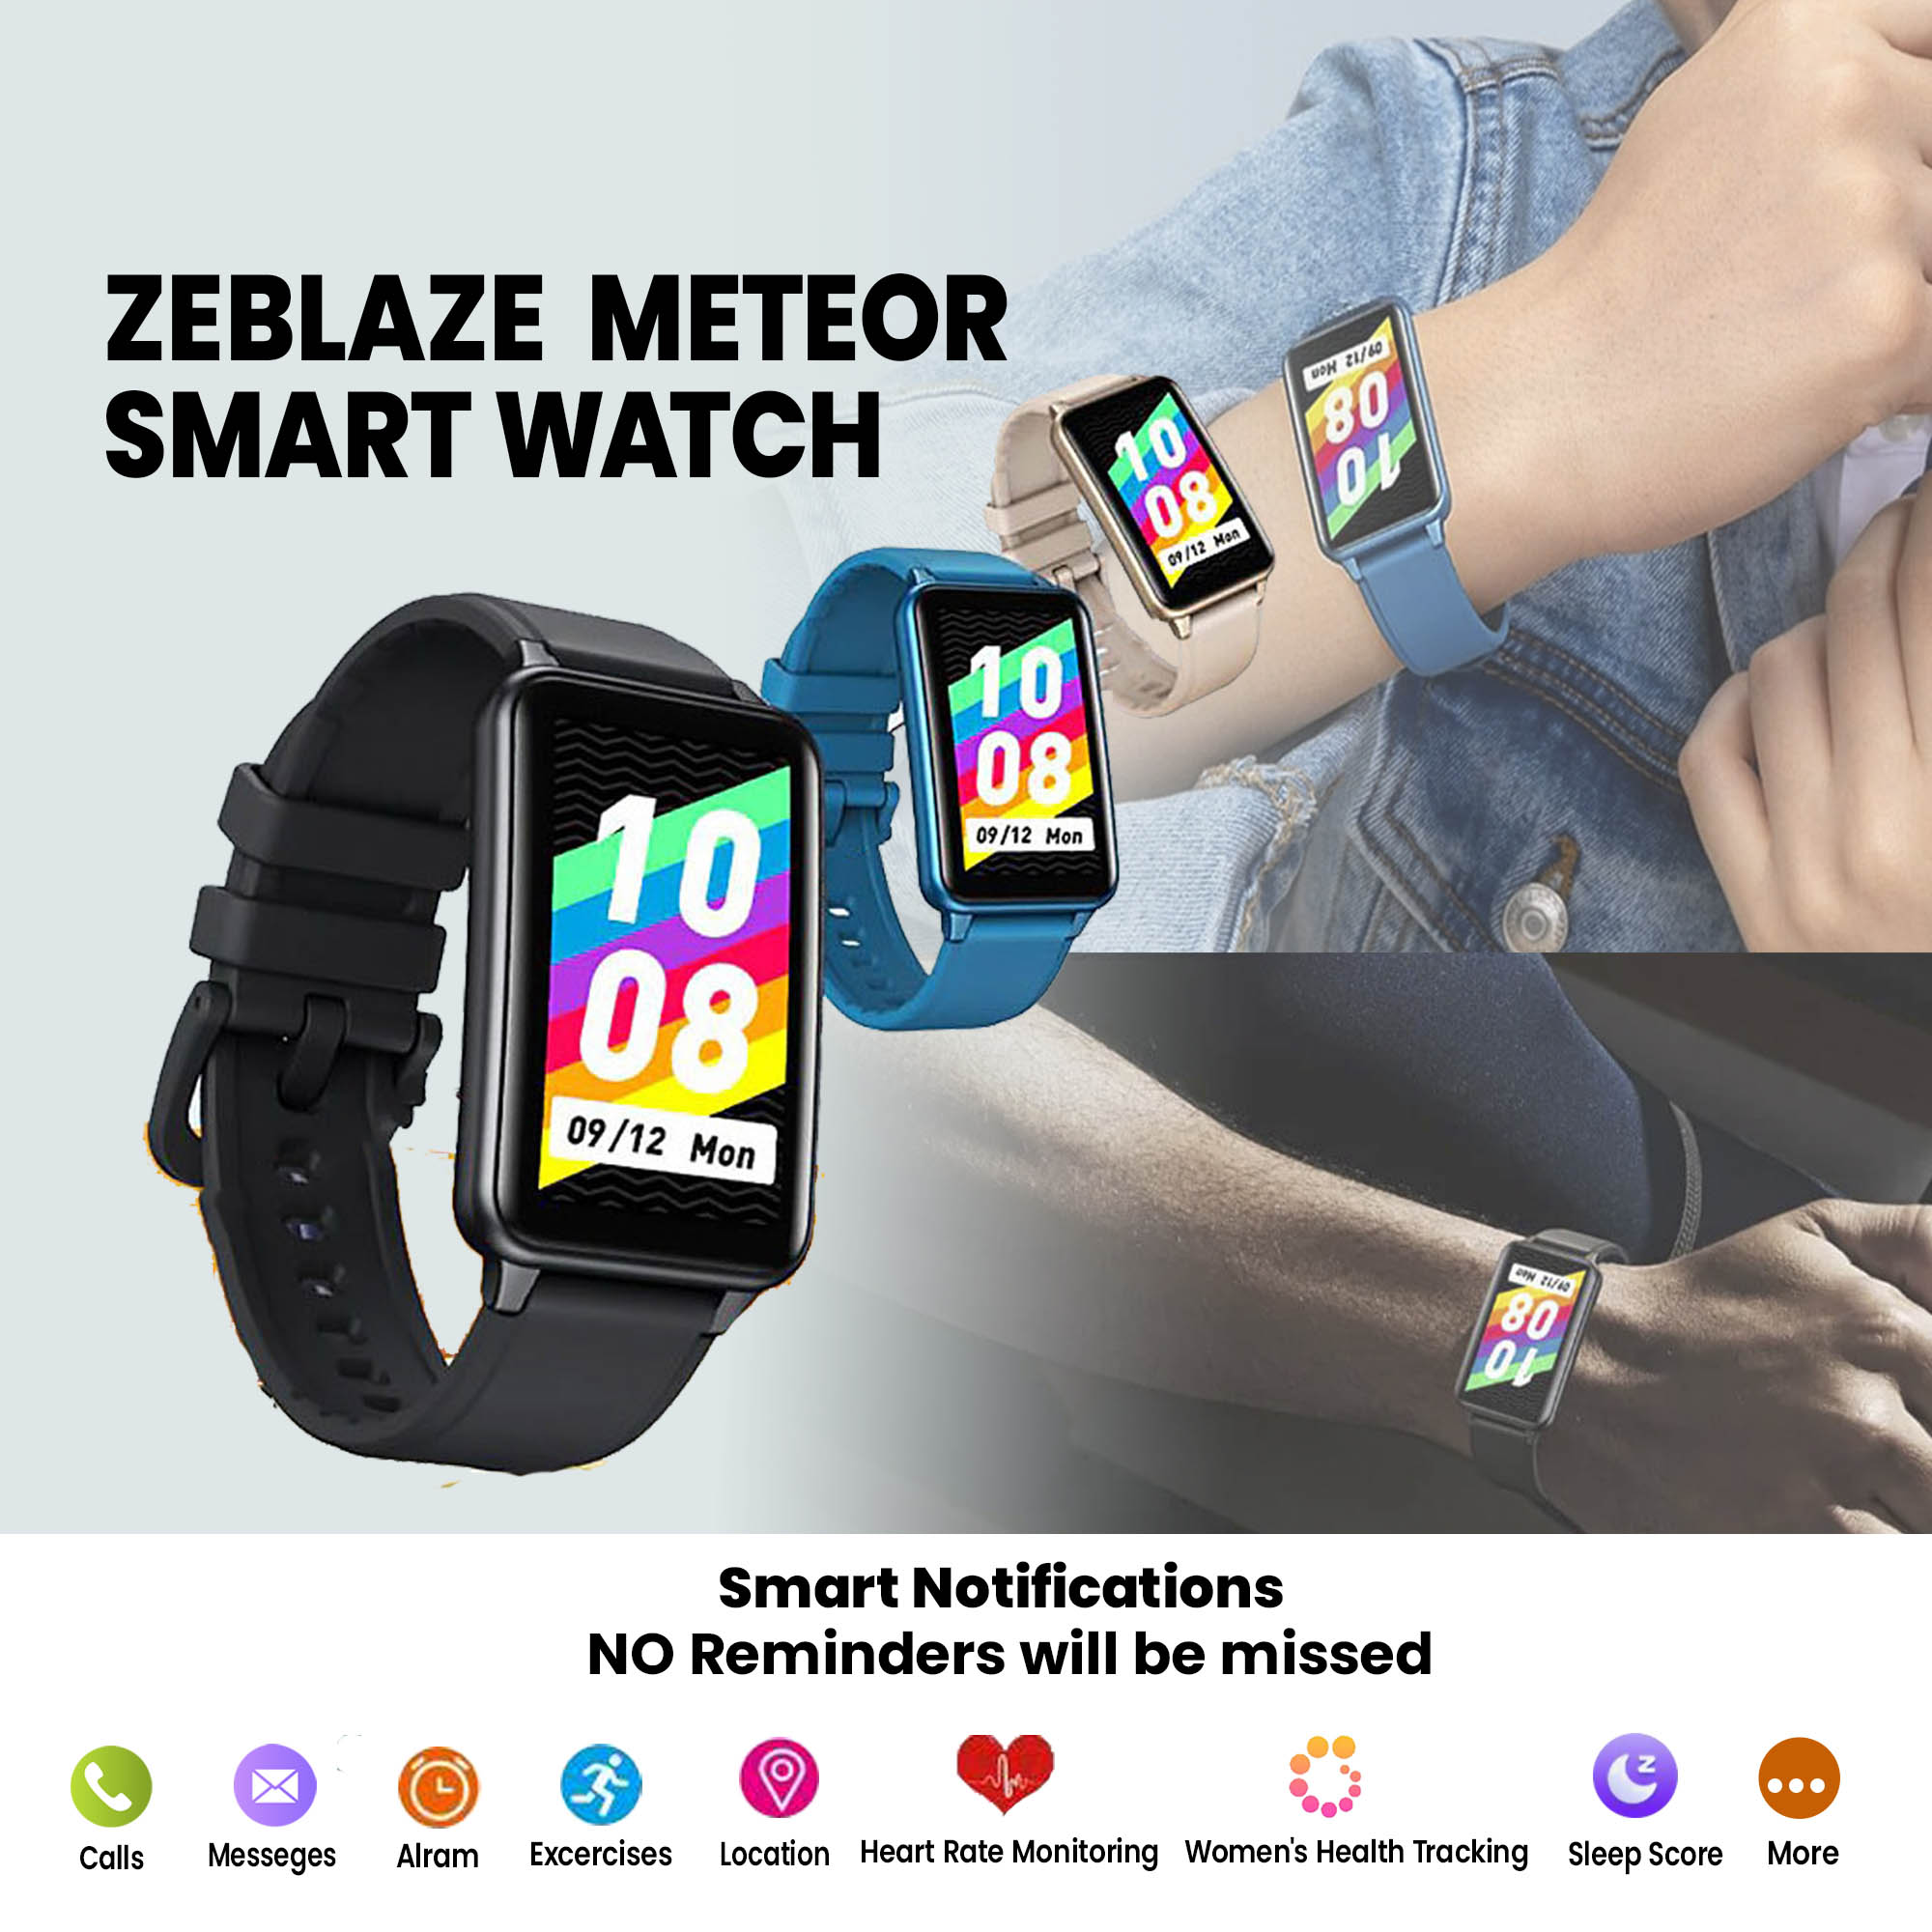 Zeblaze Meteor Smart Watch